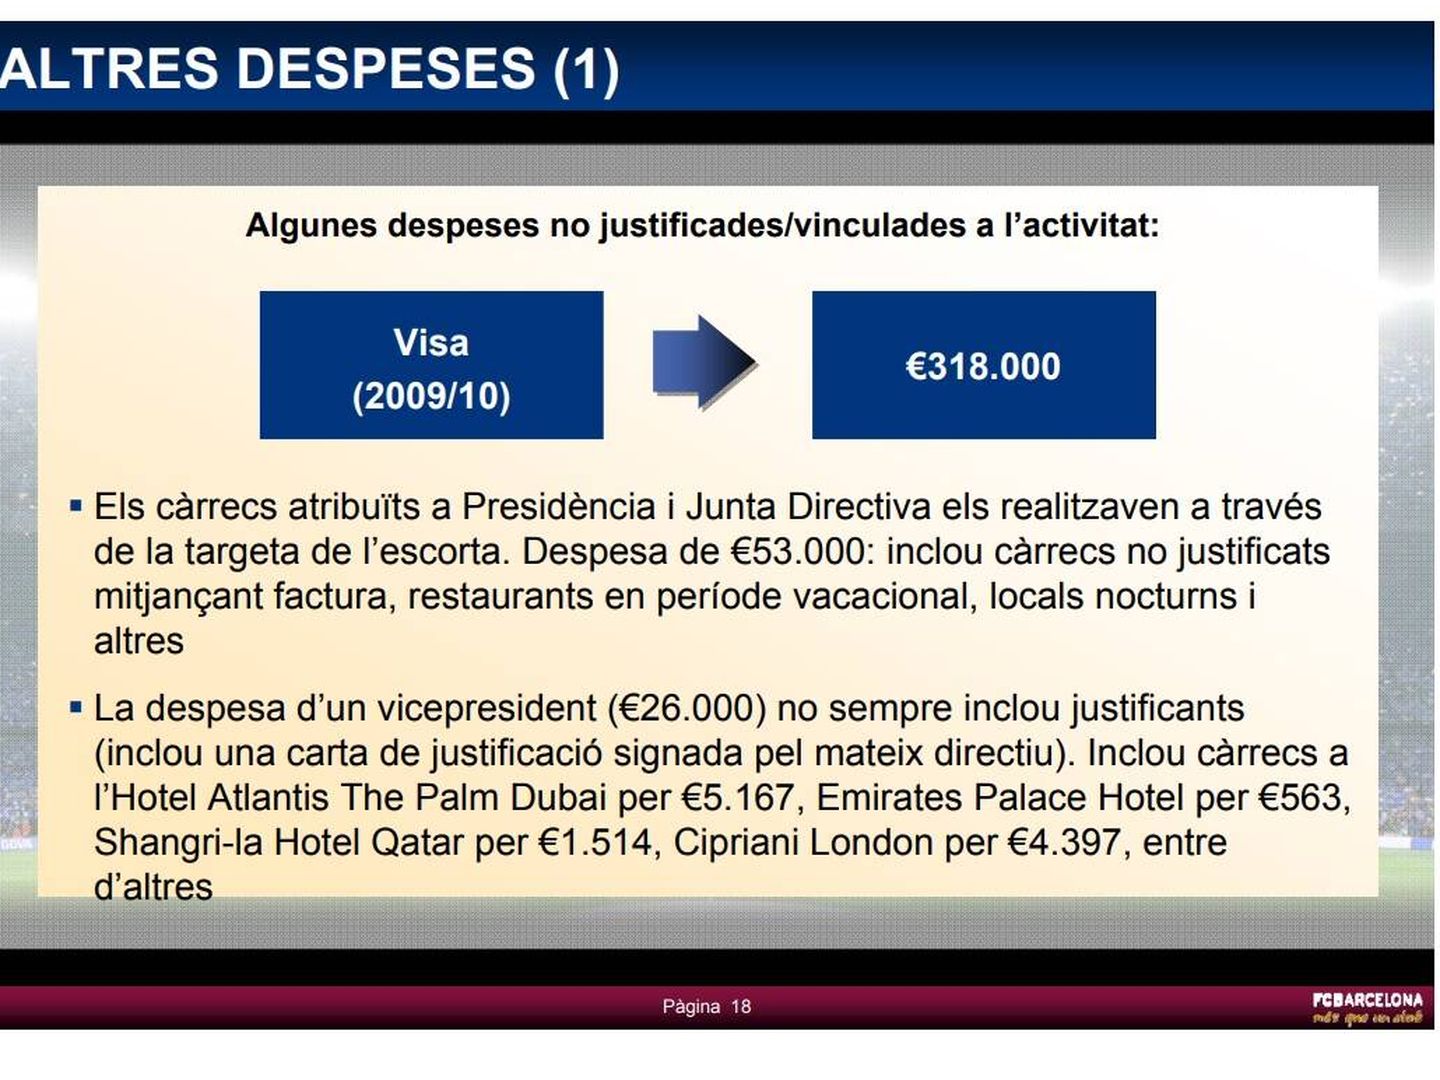 Los gastos irregulares del Barça que sí fueron detectados. [Pinche aquí para ver el documento completo]